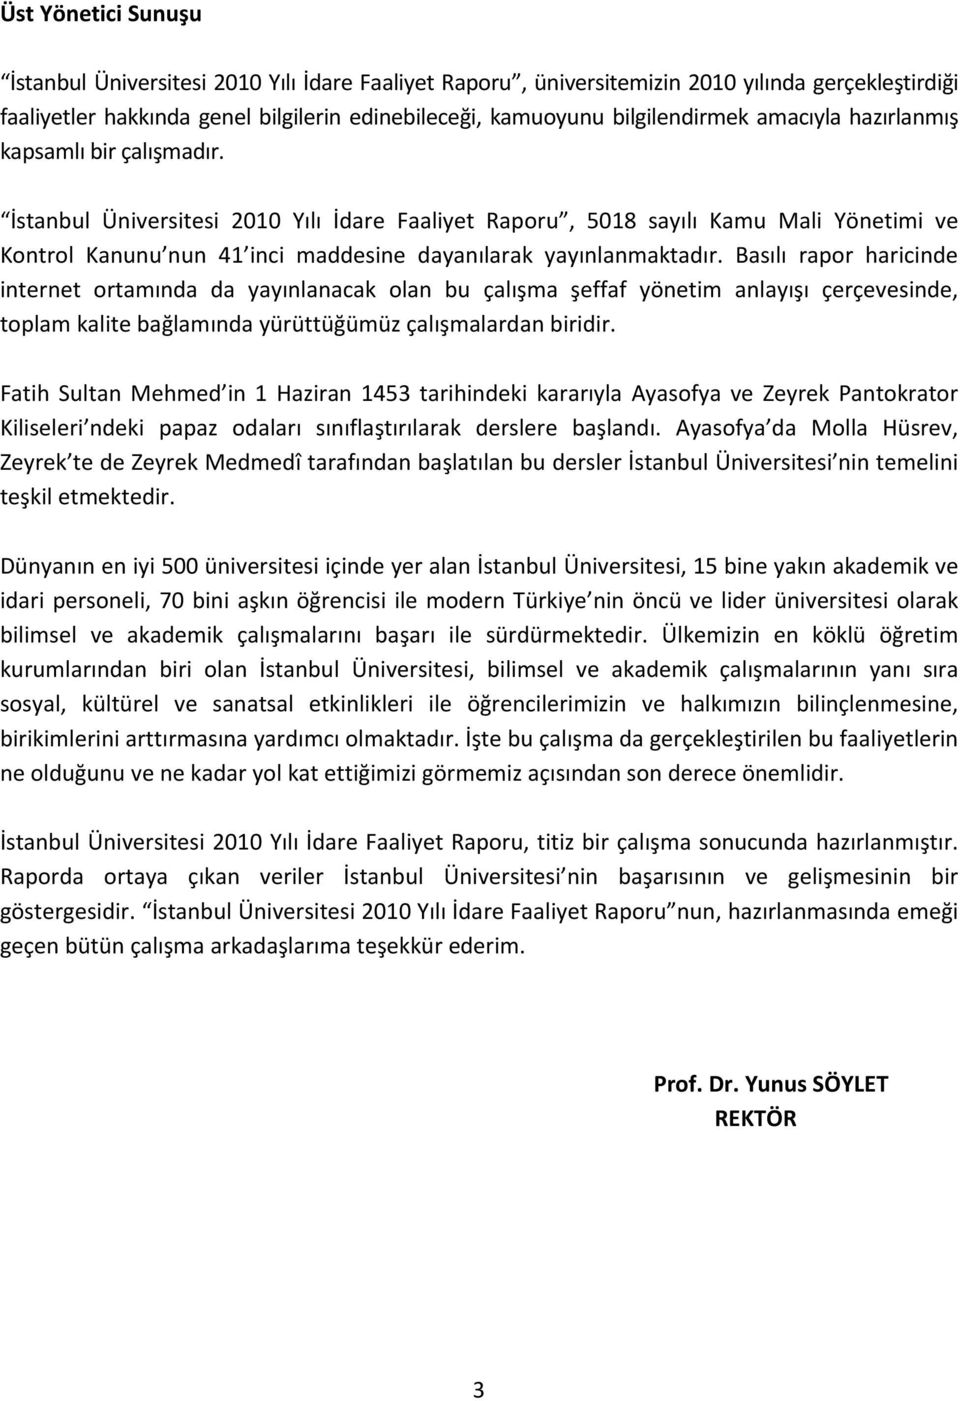 İstanbul Üniversitesi 2010 Yılı İdare Faaliyet Raporu, 5018 sayılı Kamu Mali Yönetimi ve Kontrol Kanunu nun 41 inci maddesine dayanılarak yayınlanmaktadır.